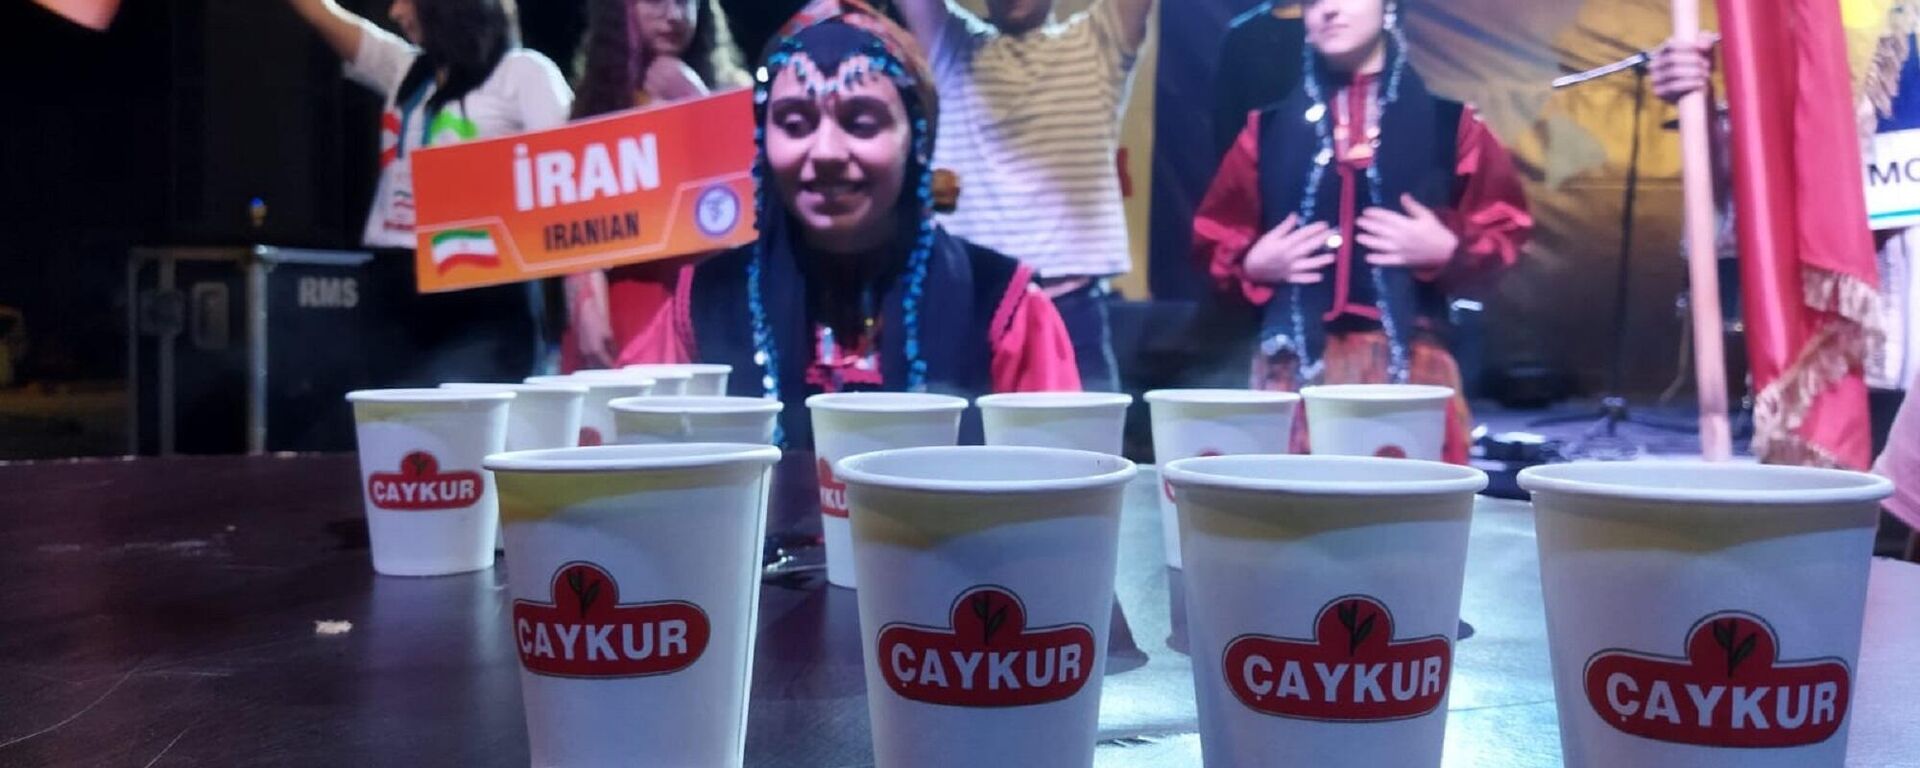 Rize'nin Ardeşen ilçesinde düzenlenen festivalde 7 ülkeden yarışmacıların katıldığı en hızlı çay içme yarışmasında Aleyna Yıldırım birinci oldu. - Sputnik Türkiye, 1920, 23.07.2022